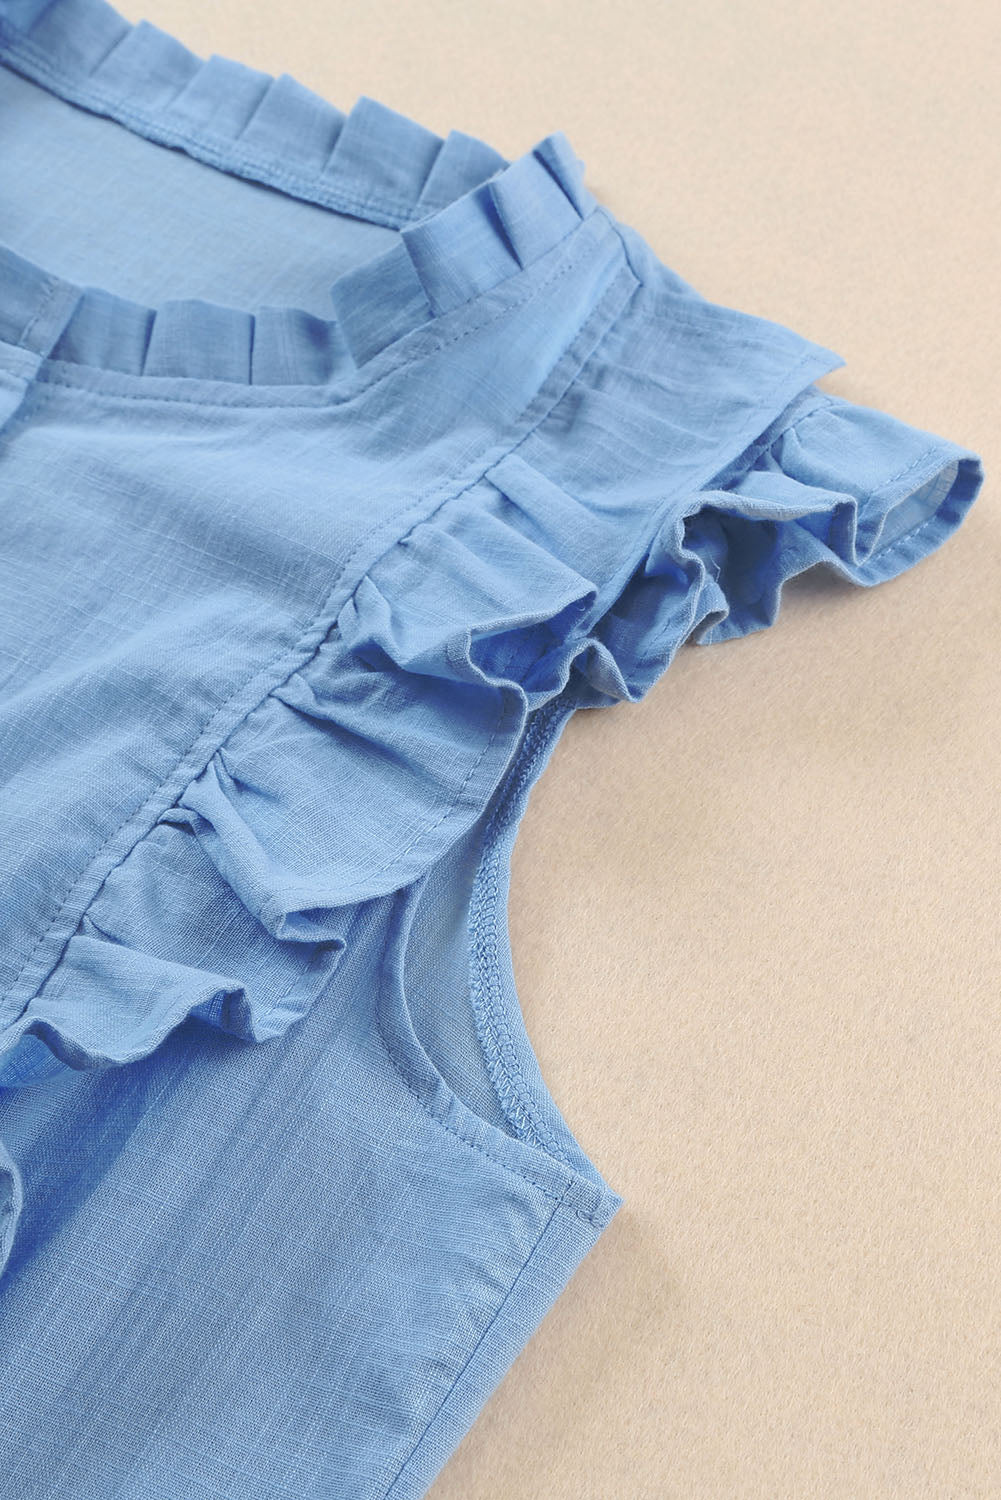 Sky Blue Ruffle Trim Soft Lightweight Sleeveless Shirt